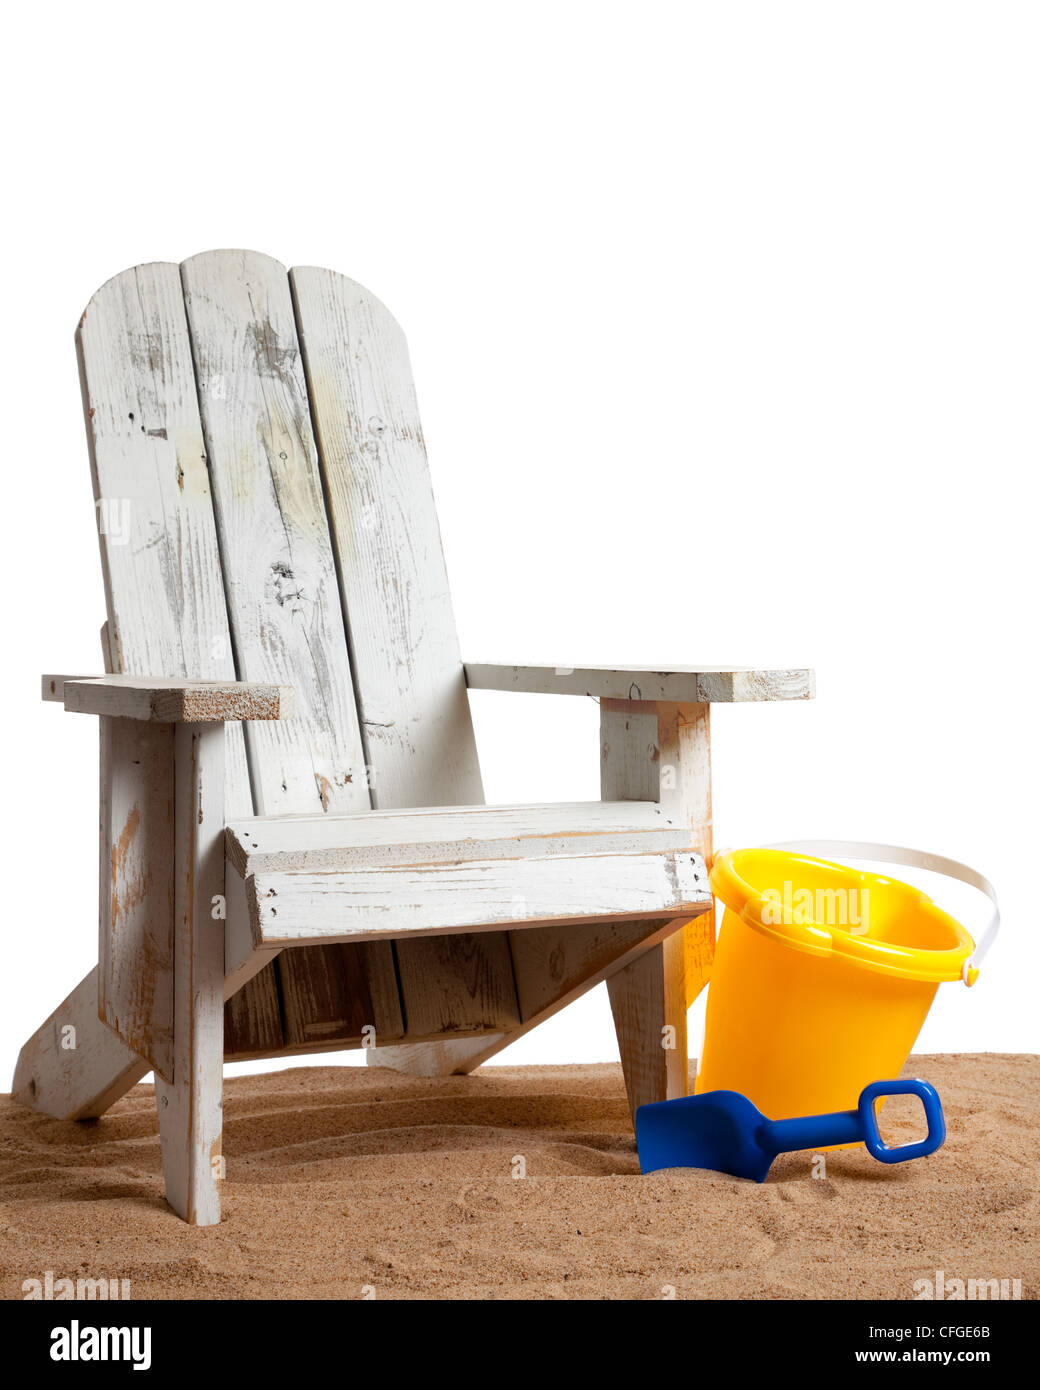 Weiße Adirondack Stuhl mit Schaufel/Eimer mit Sand auf weißem Hintergrund  Stockfotografie - Alamy